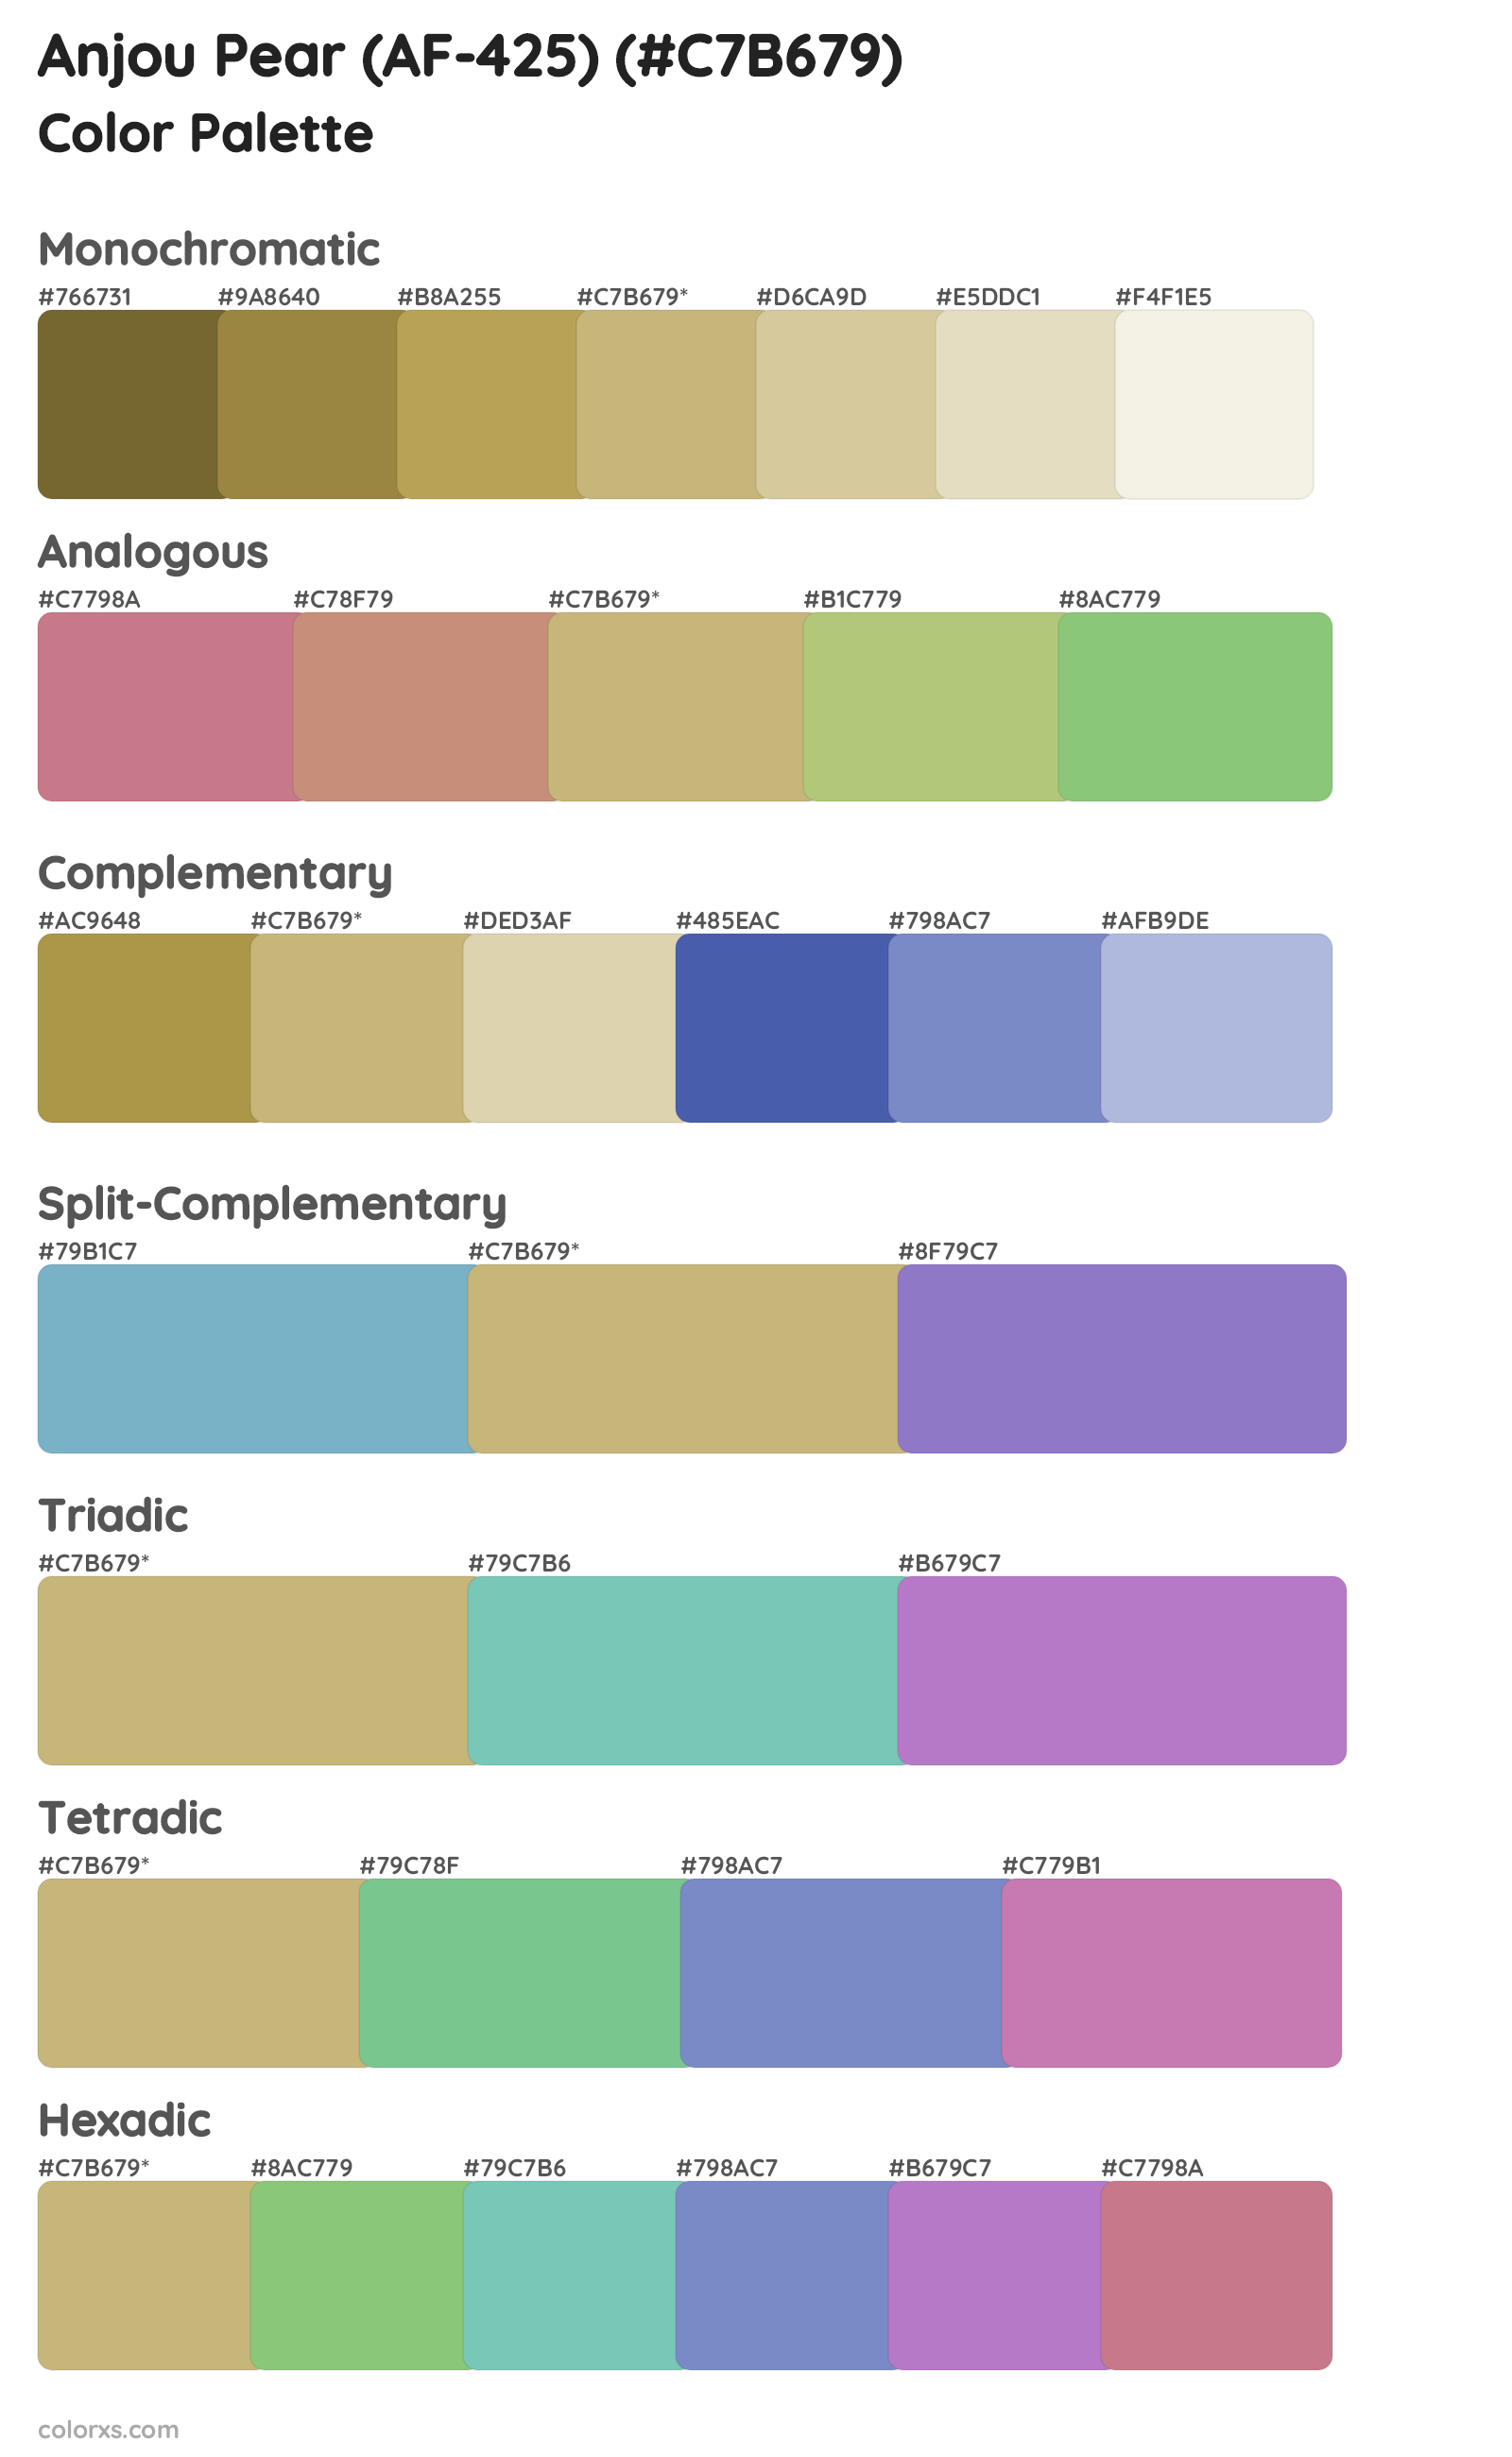 Anjou Pear (AF-425) Color Scheme Palettes